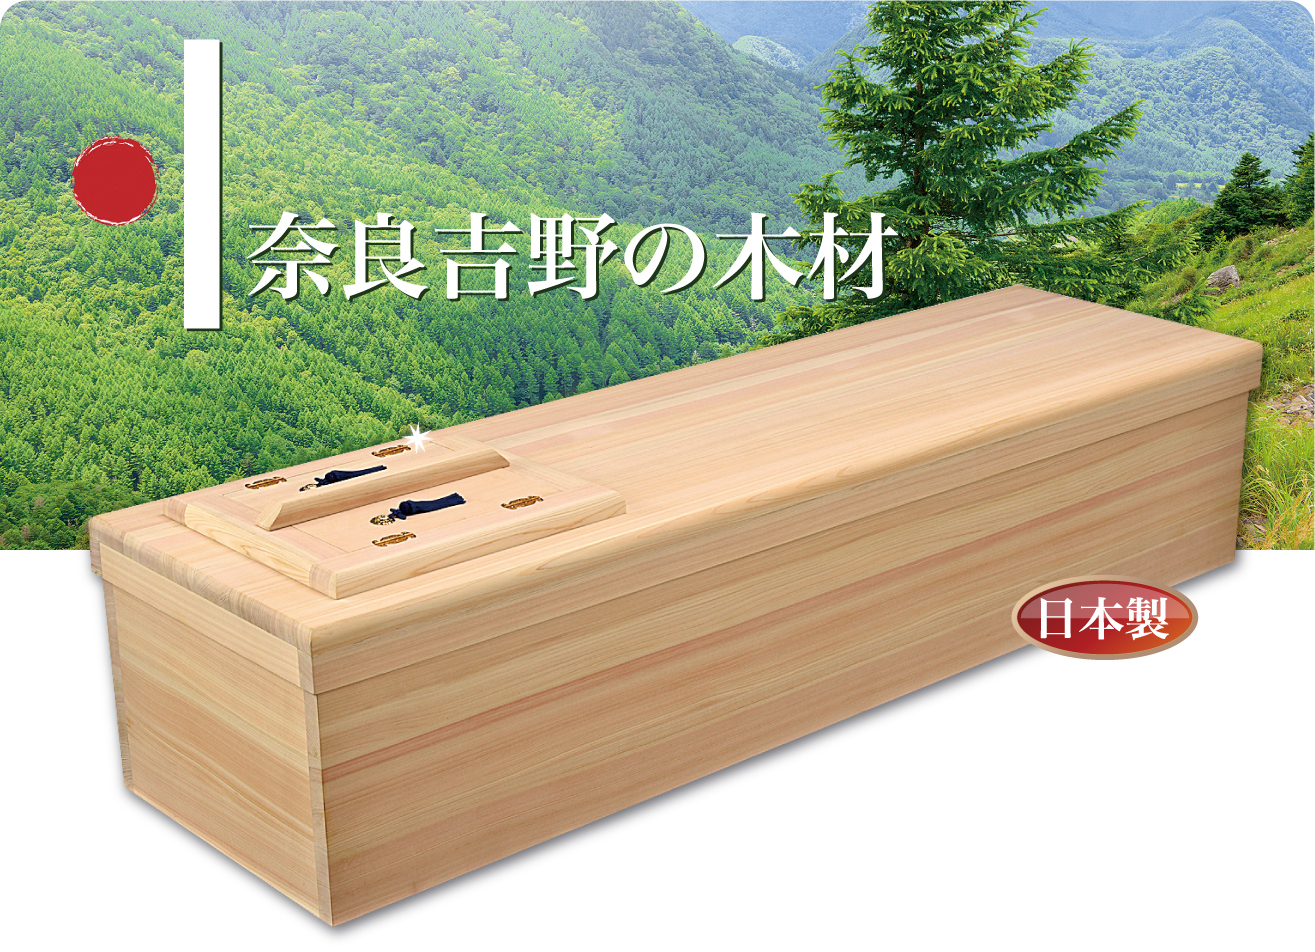 奈良吉野の木材を使用し、森林保護に努めます。